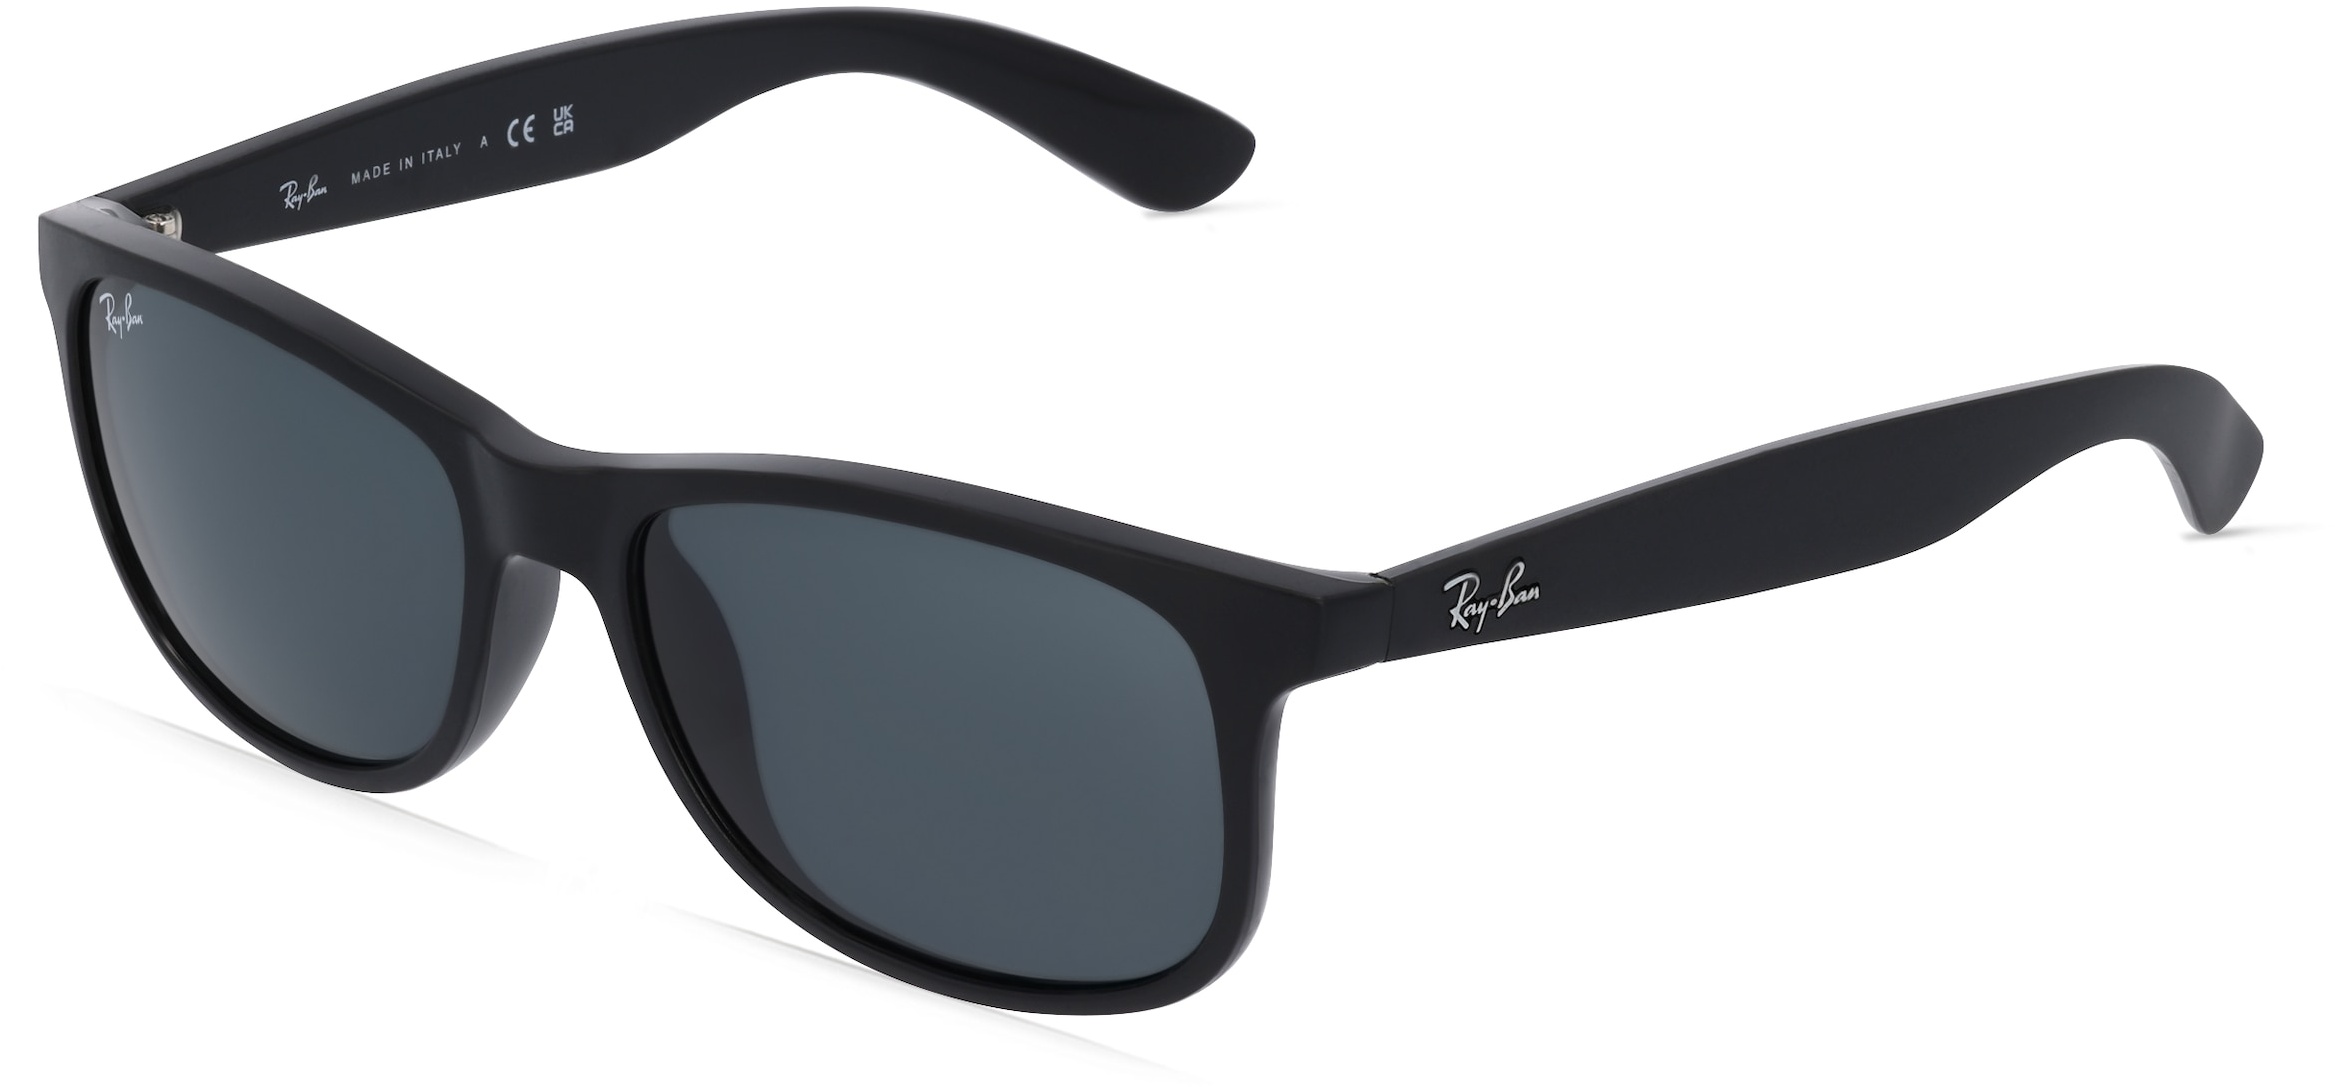 Ray-Ban RB4202 Herren-Sonnenbrille Vollrand Oval Kunststoff-Gestell, schwarz